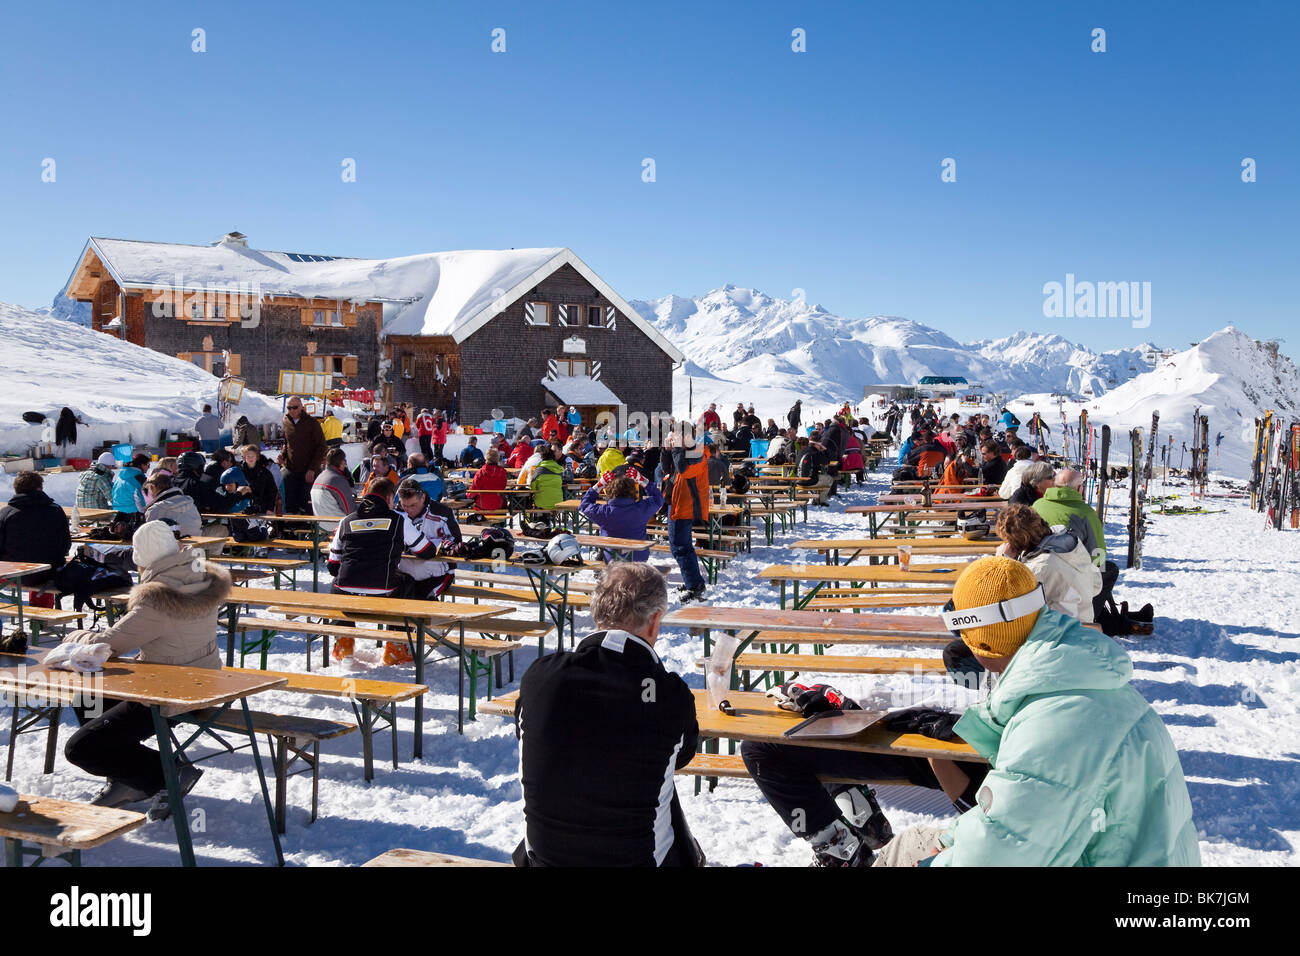 Restaurant de montagne, St Anton am Arlberg, Tirol, Alpes autrichiennes, Europe Banque D'Images